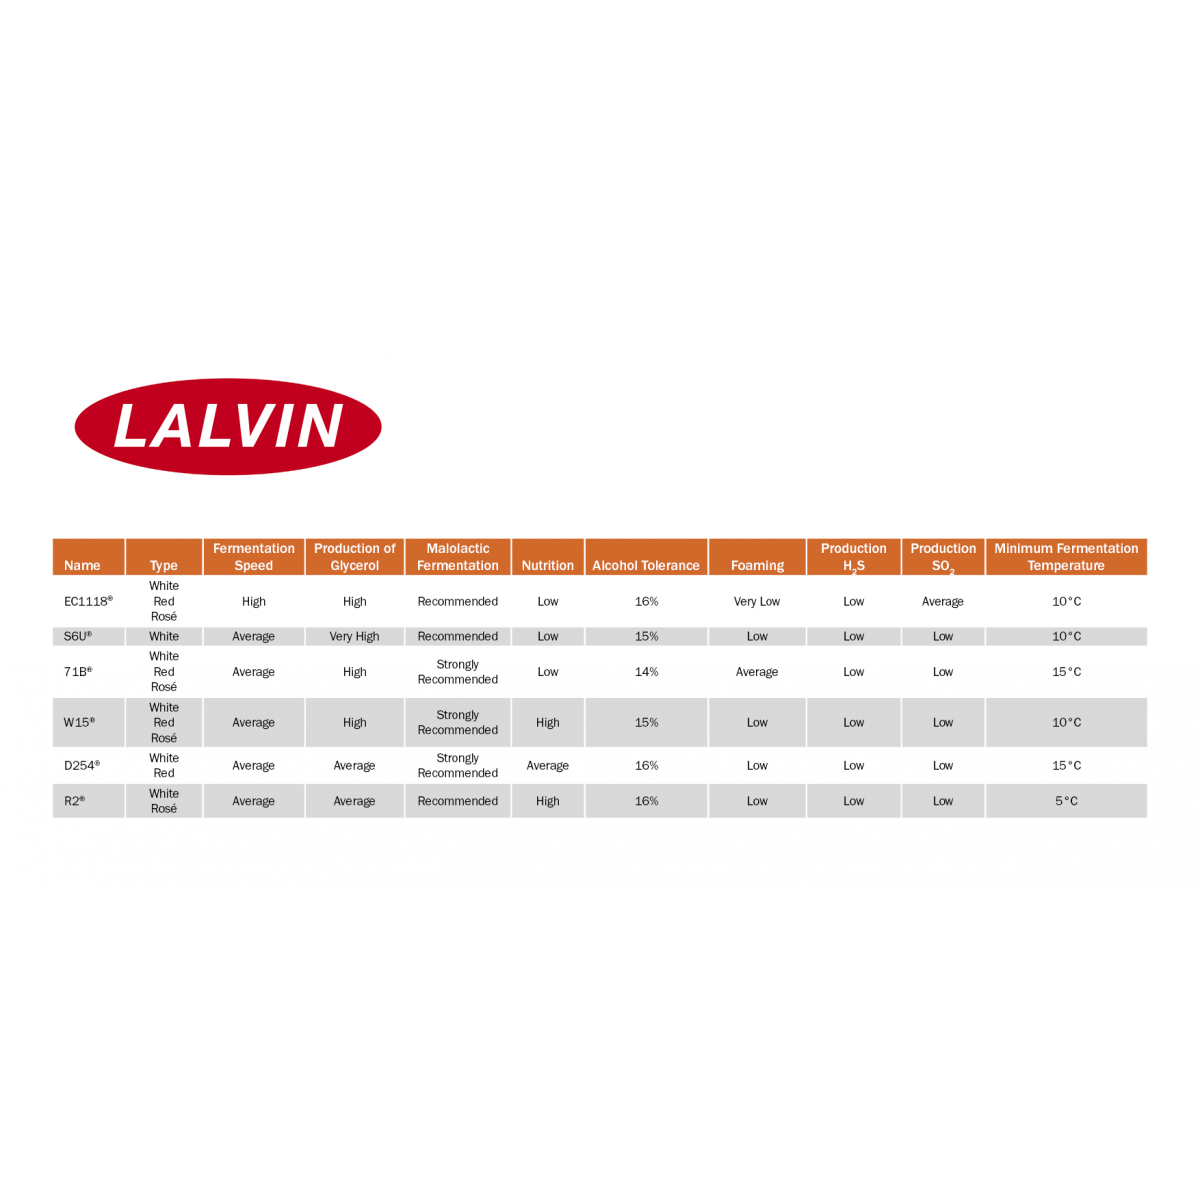 Levure sèche R2™ - Lalvin™ - 500 g